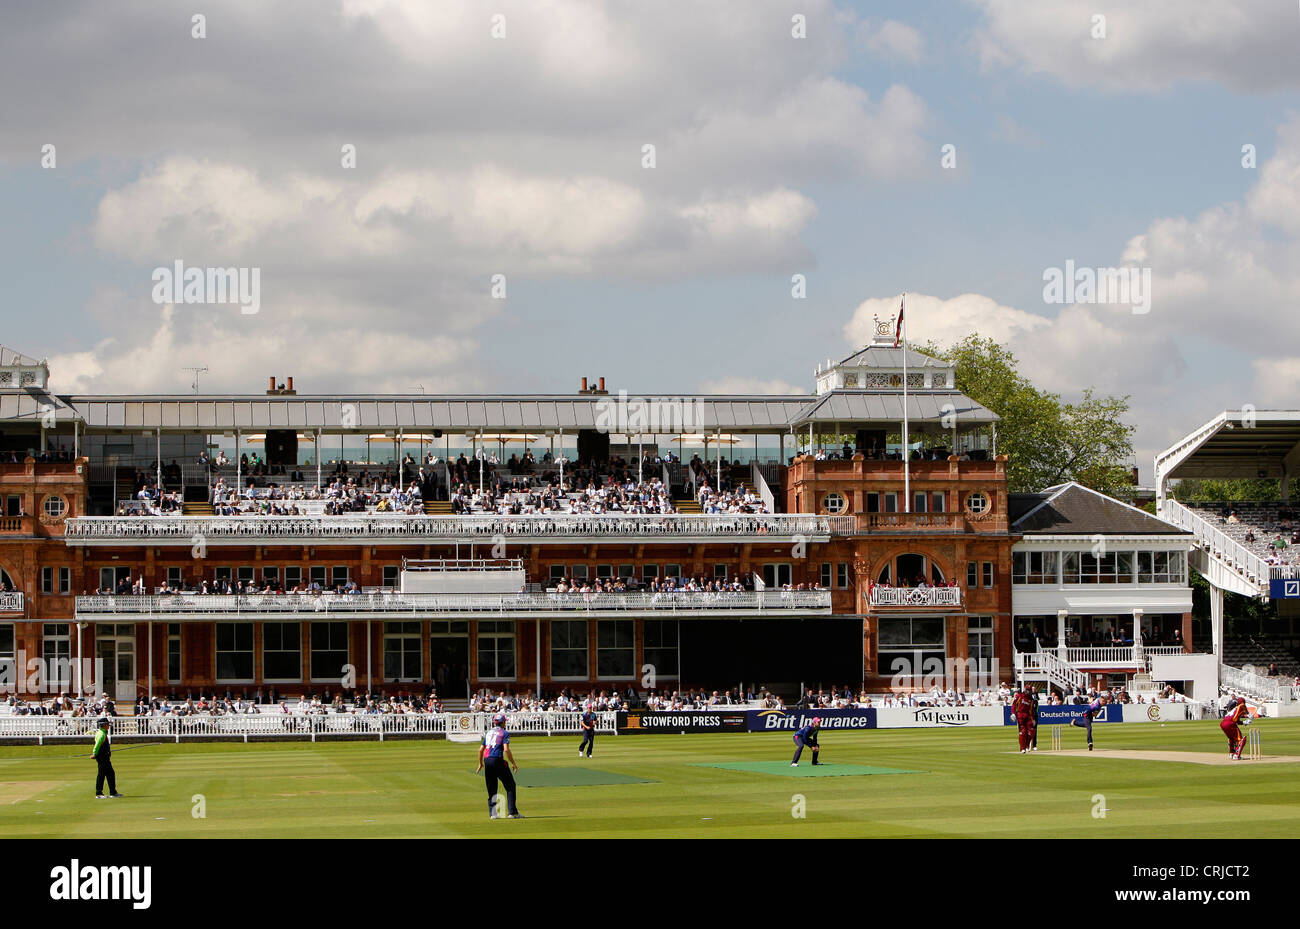 Il padiglione di stile vittoriano a Lord's Cricket Ground durante una partita tra il West Indies e Middlesex. Foto Stock